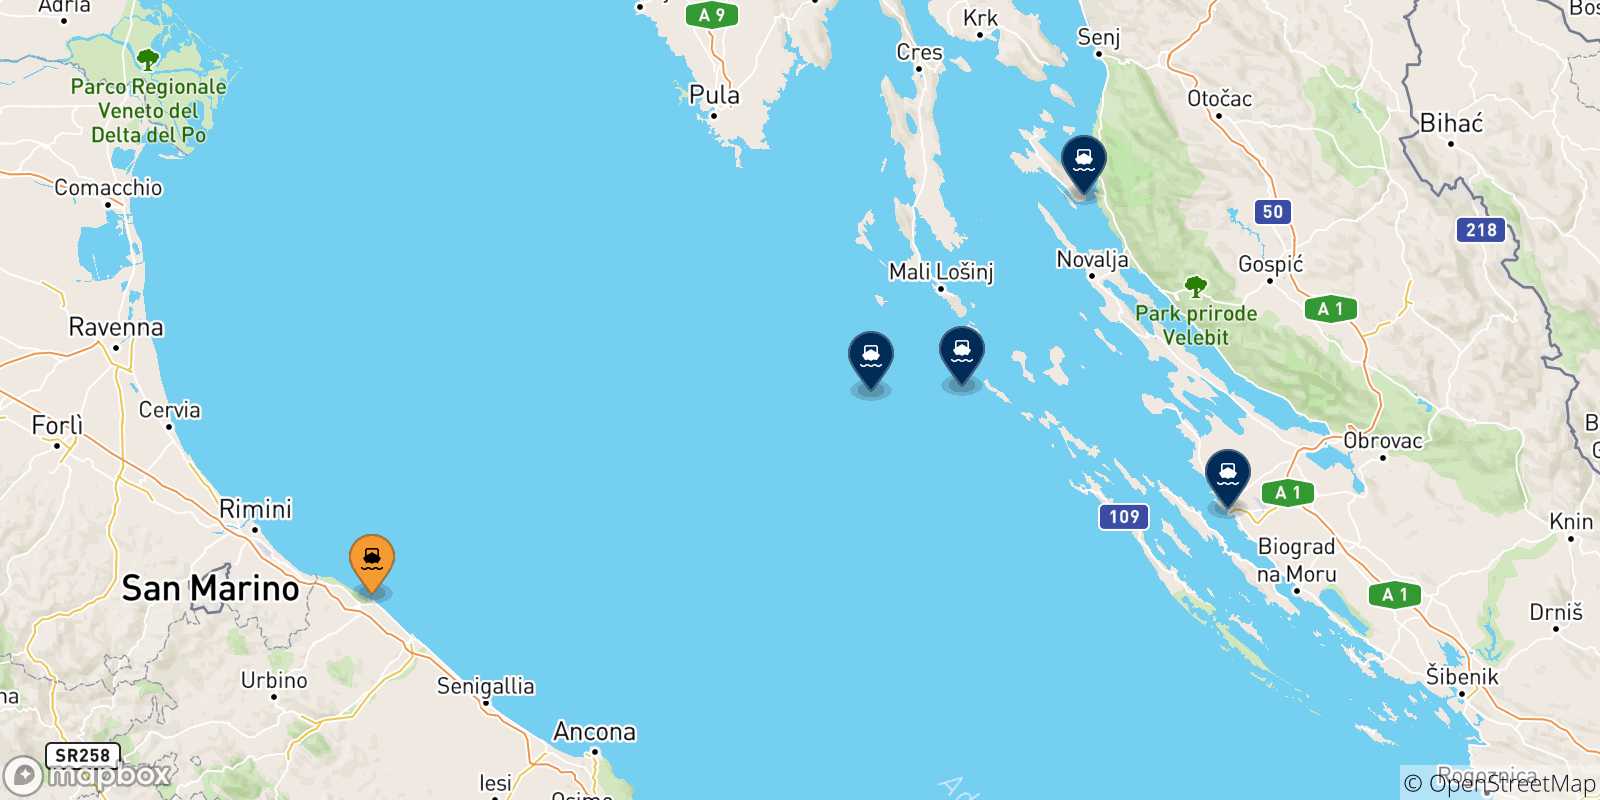 Mappa delle possibili rotte tra Pesaro e la Croazia